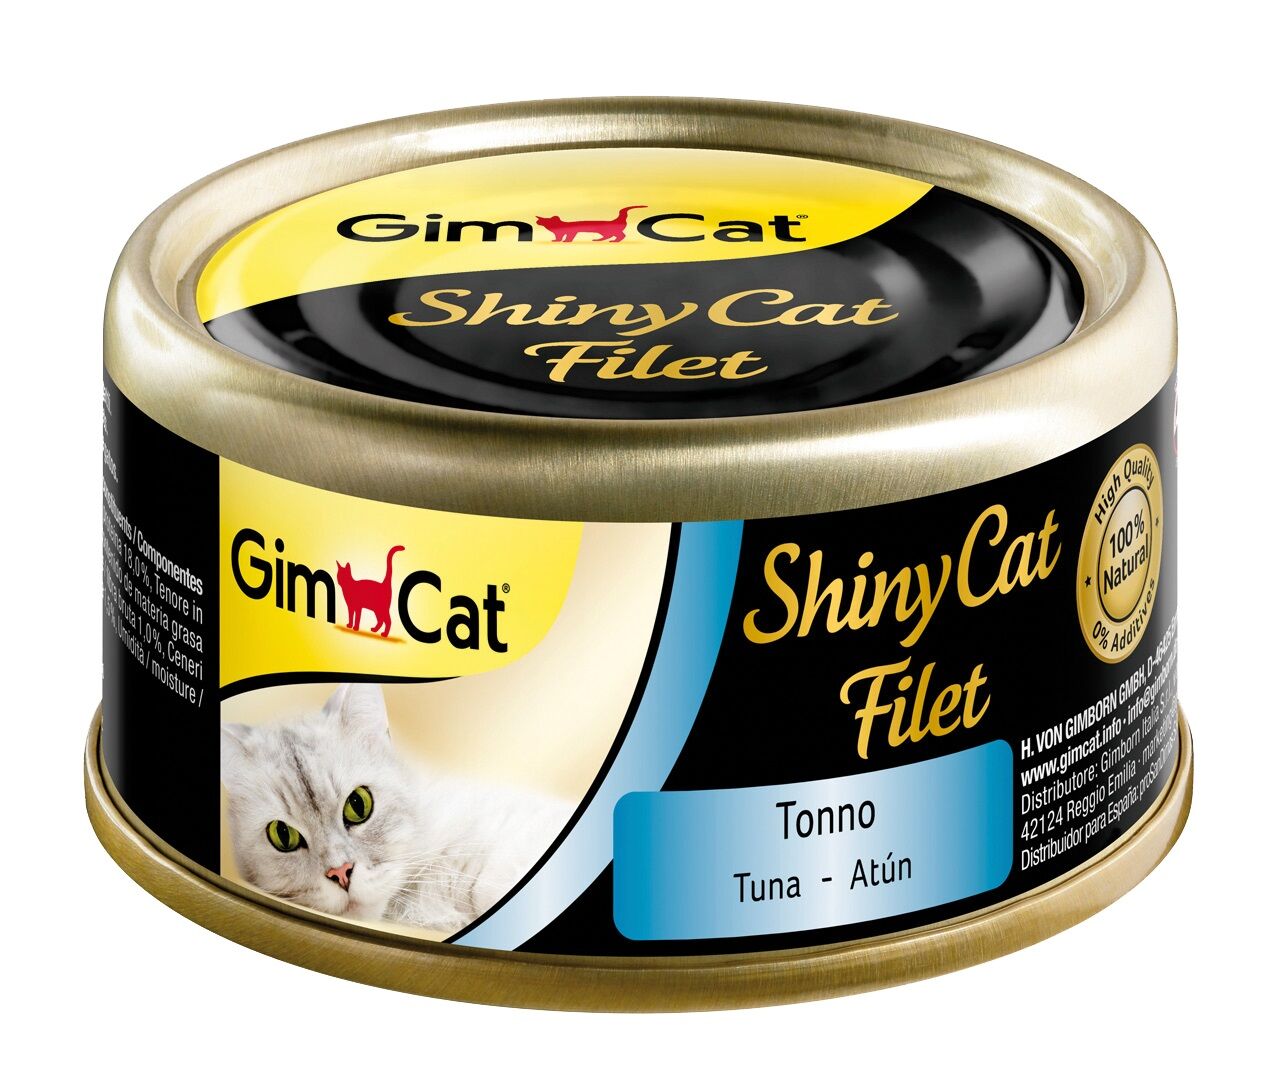 Gimcat Shinycat Kıyılmış Fileto Tuna Balıklı Yetişkin Konserve Kedi Maması 70 Gr